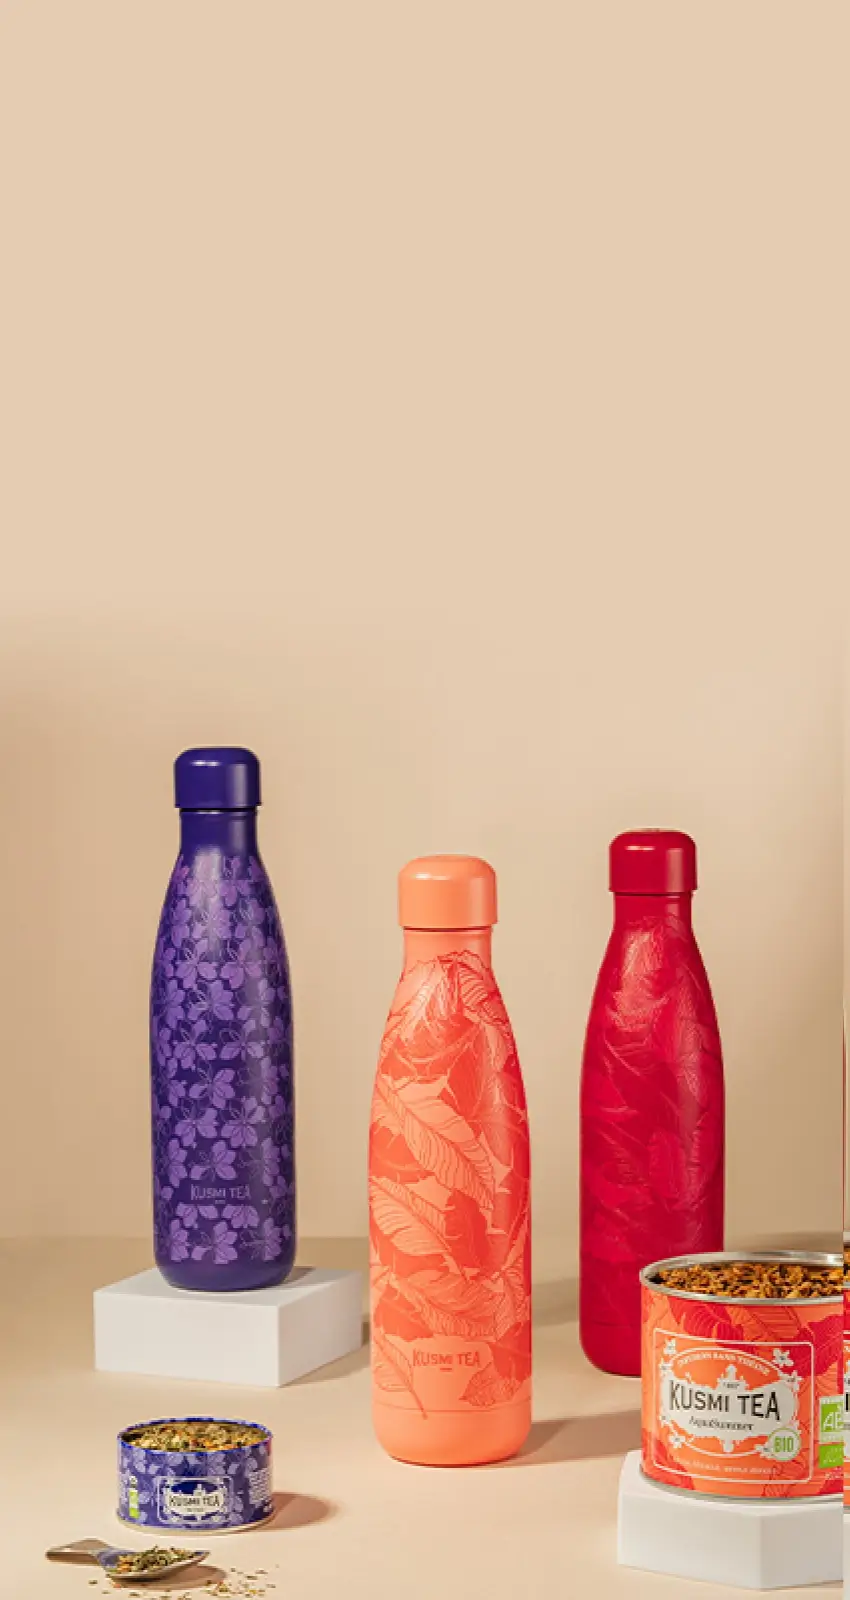 Klicken Sie auf "Jetzt entdecken", um unsere bunten Kräutertee-Flaschen zu entdecken.